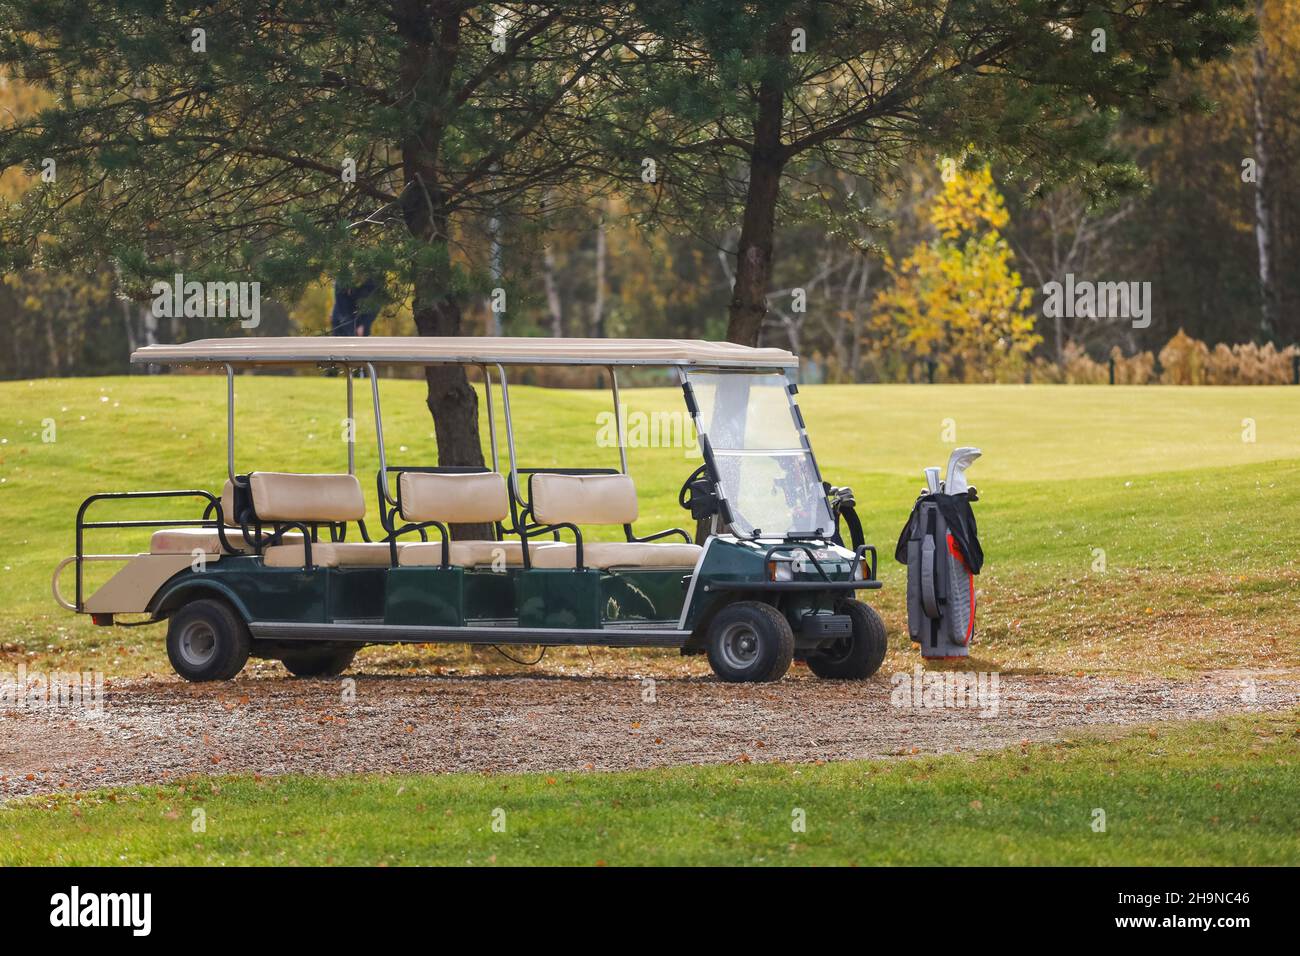 Elektro-Fahrzeug auf einem Golfplatz genutzt Stockfotografie - Alamy